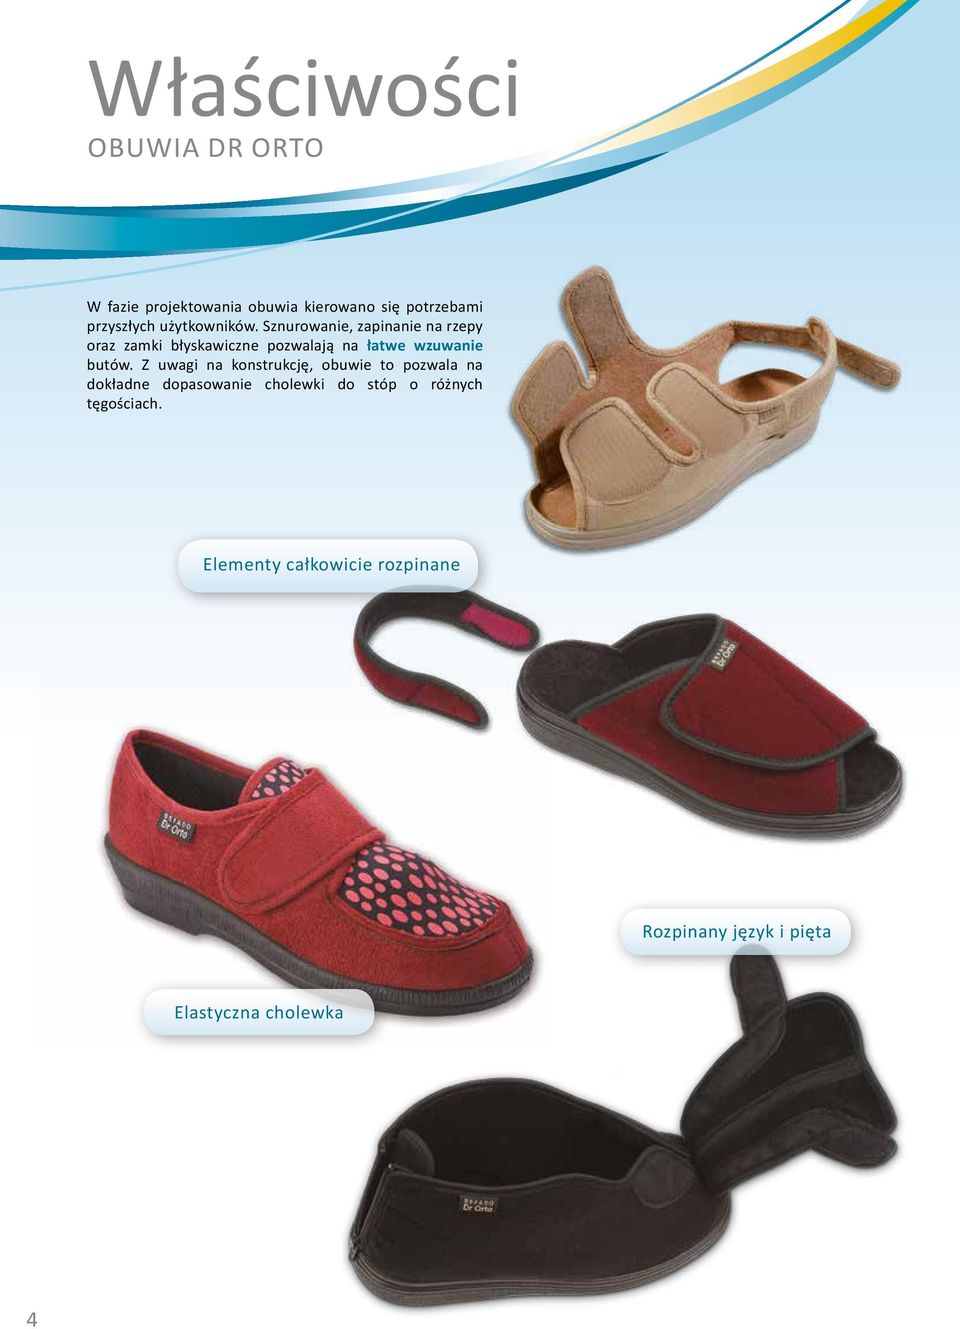 Sznurowanie, zapinanie na rzepy oraz zamki błyskawiczne pozwalają na łatwe wzuwanie butów.